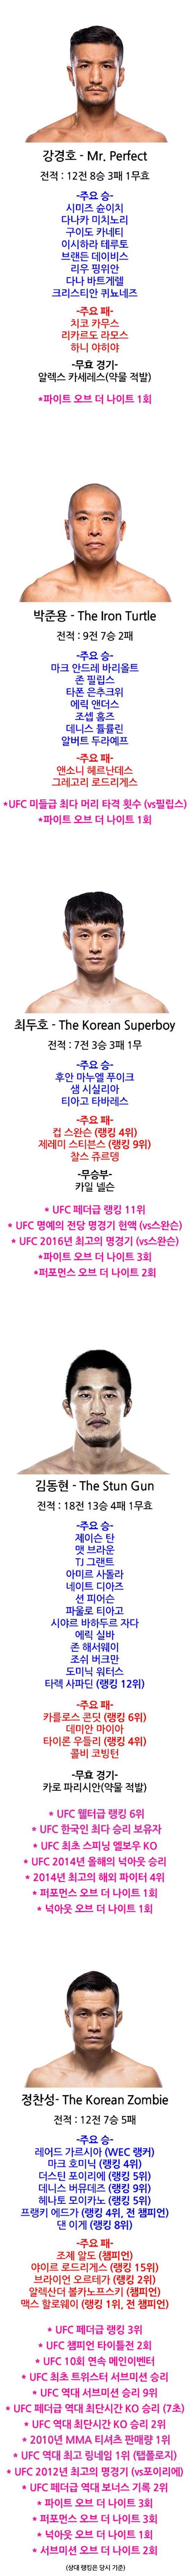 엄청나게 빡센 UFC 역대 한국 선수들 성적